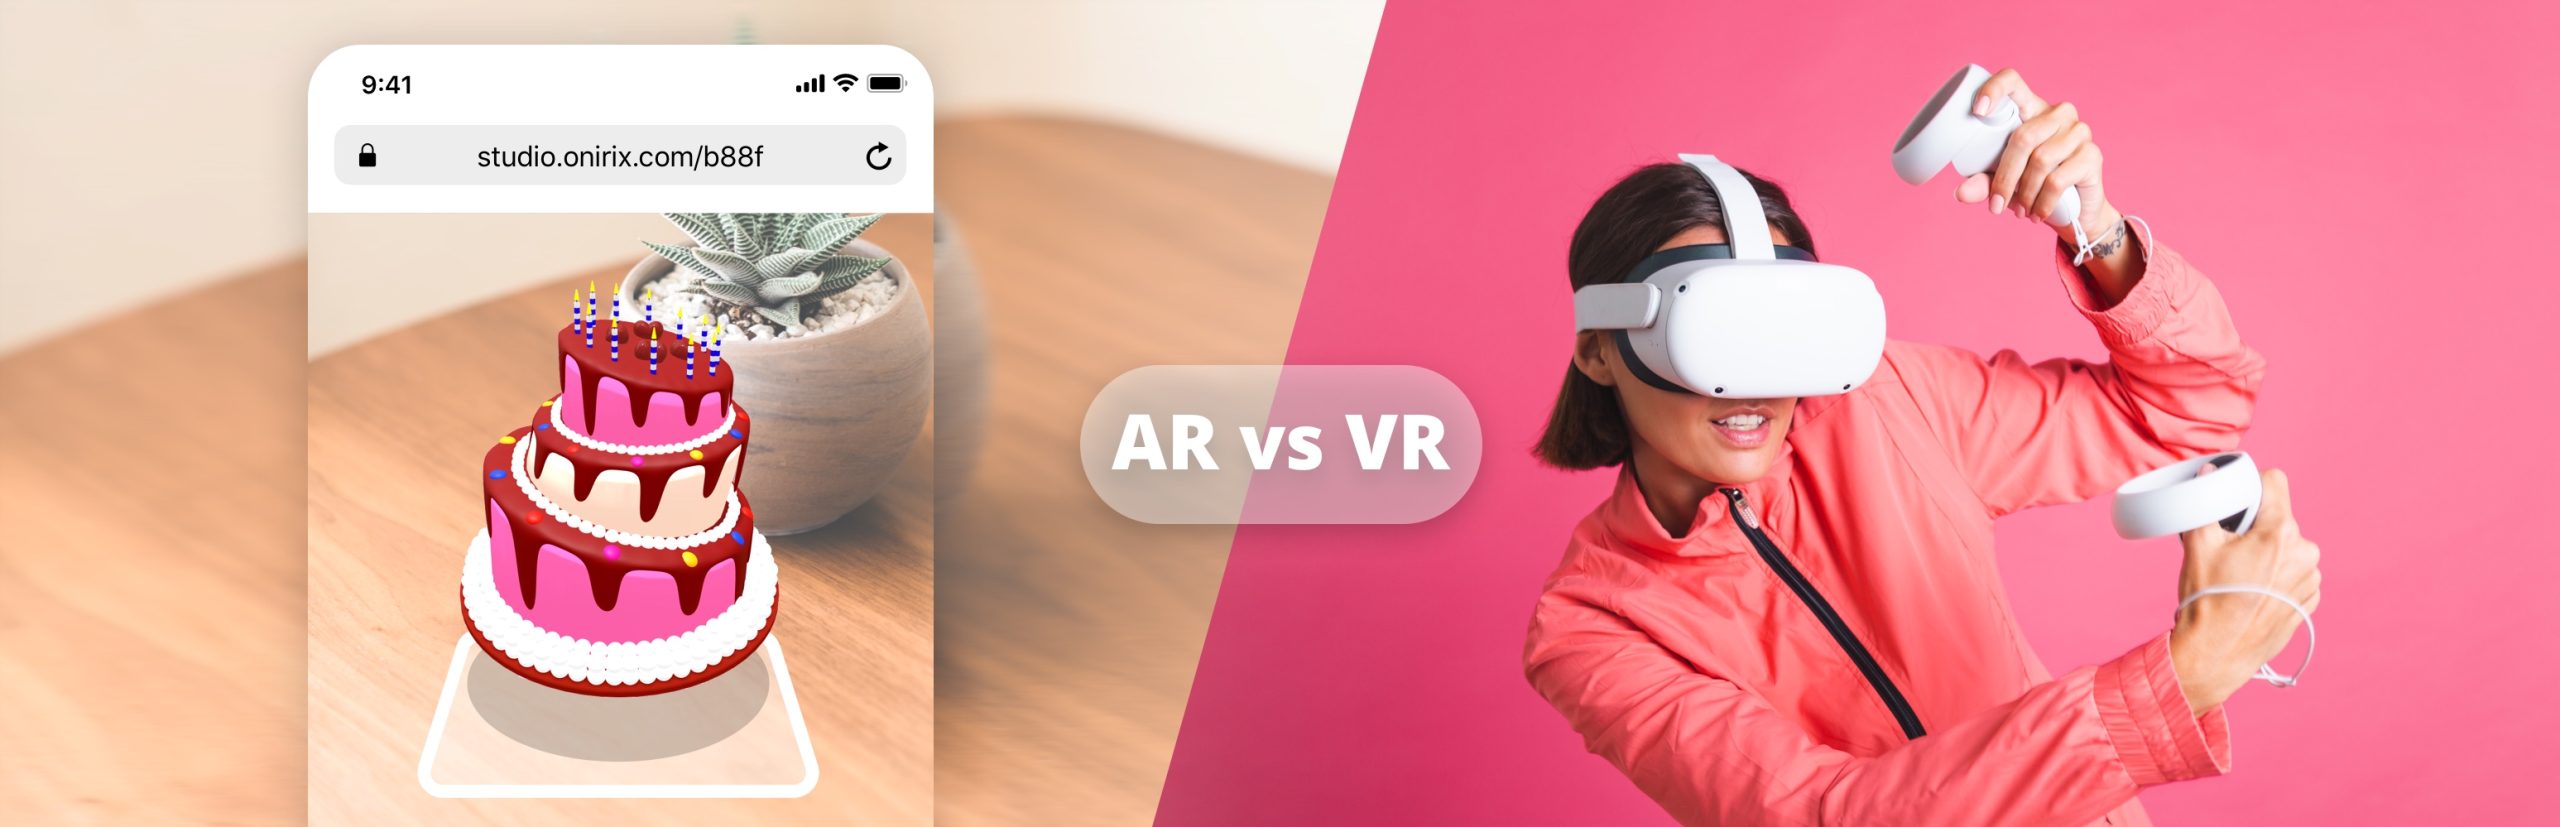 Realidad virtual o realidad aumentada ¿Cuál es mejor?